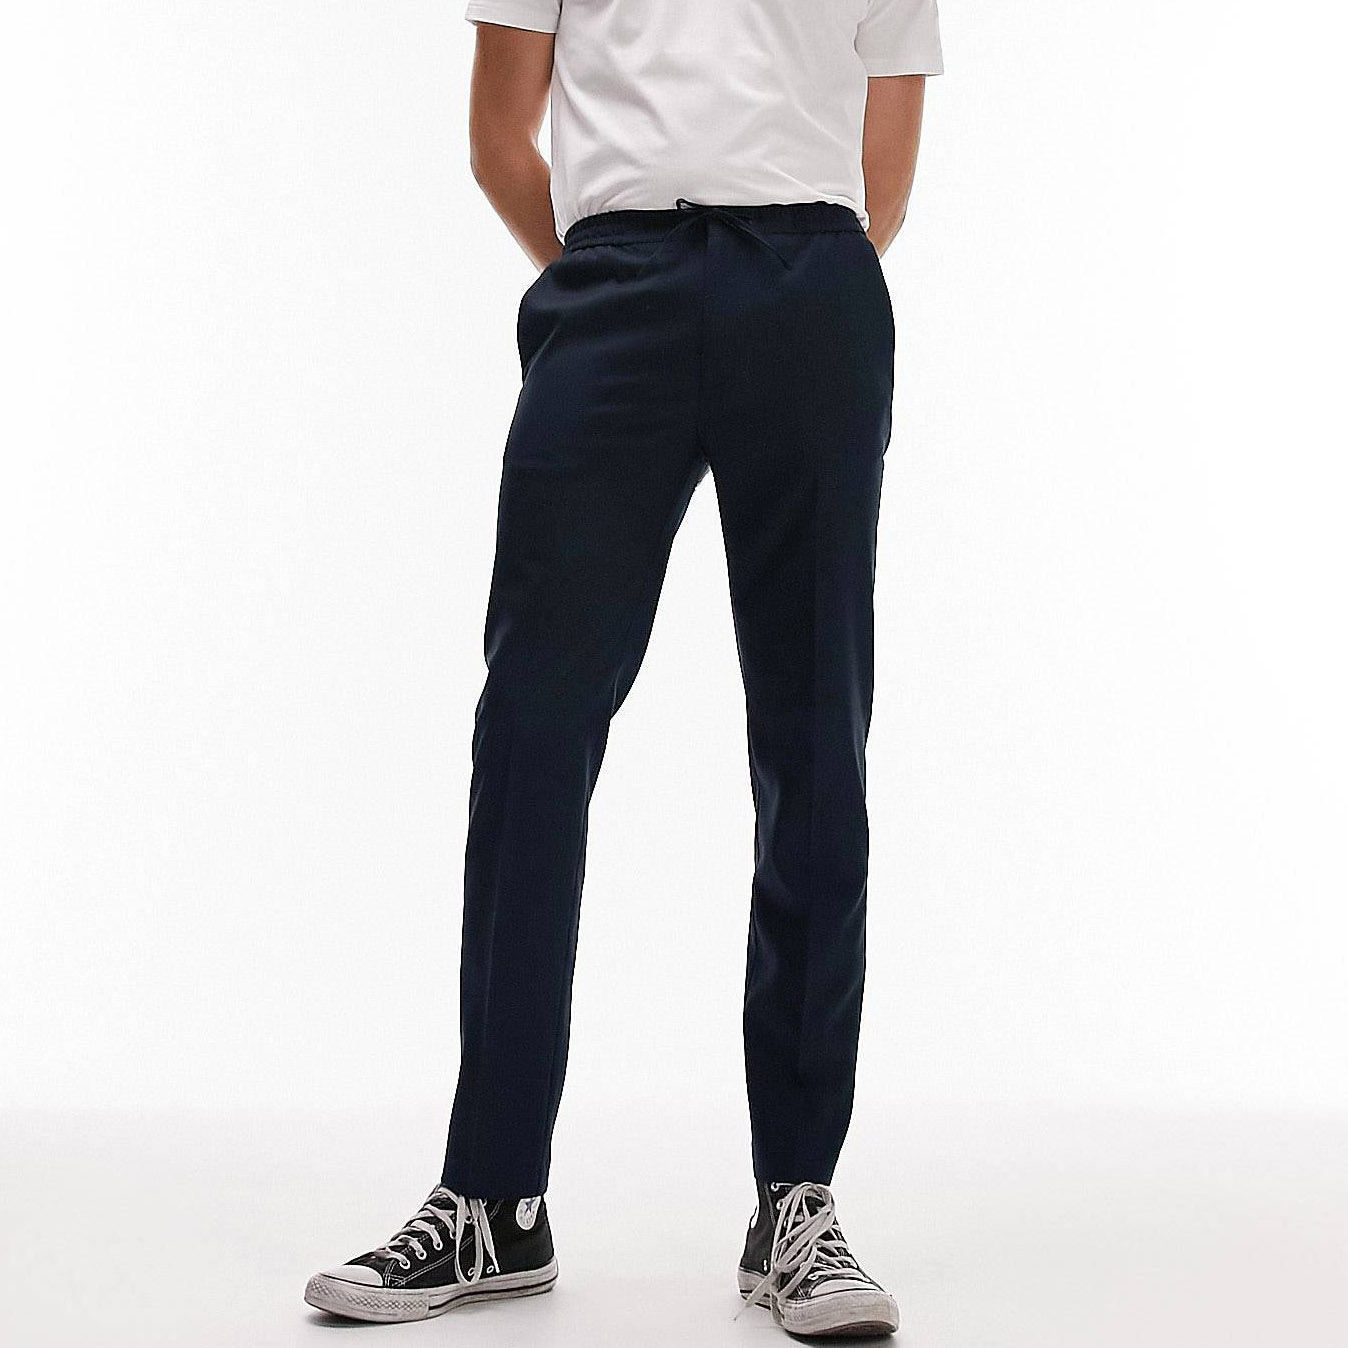 Брюки Topman Skinny Smart With Elasticated Waistband, темно-синий брюки topman straight leg темно серый